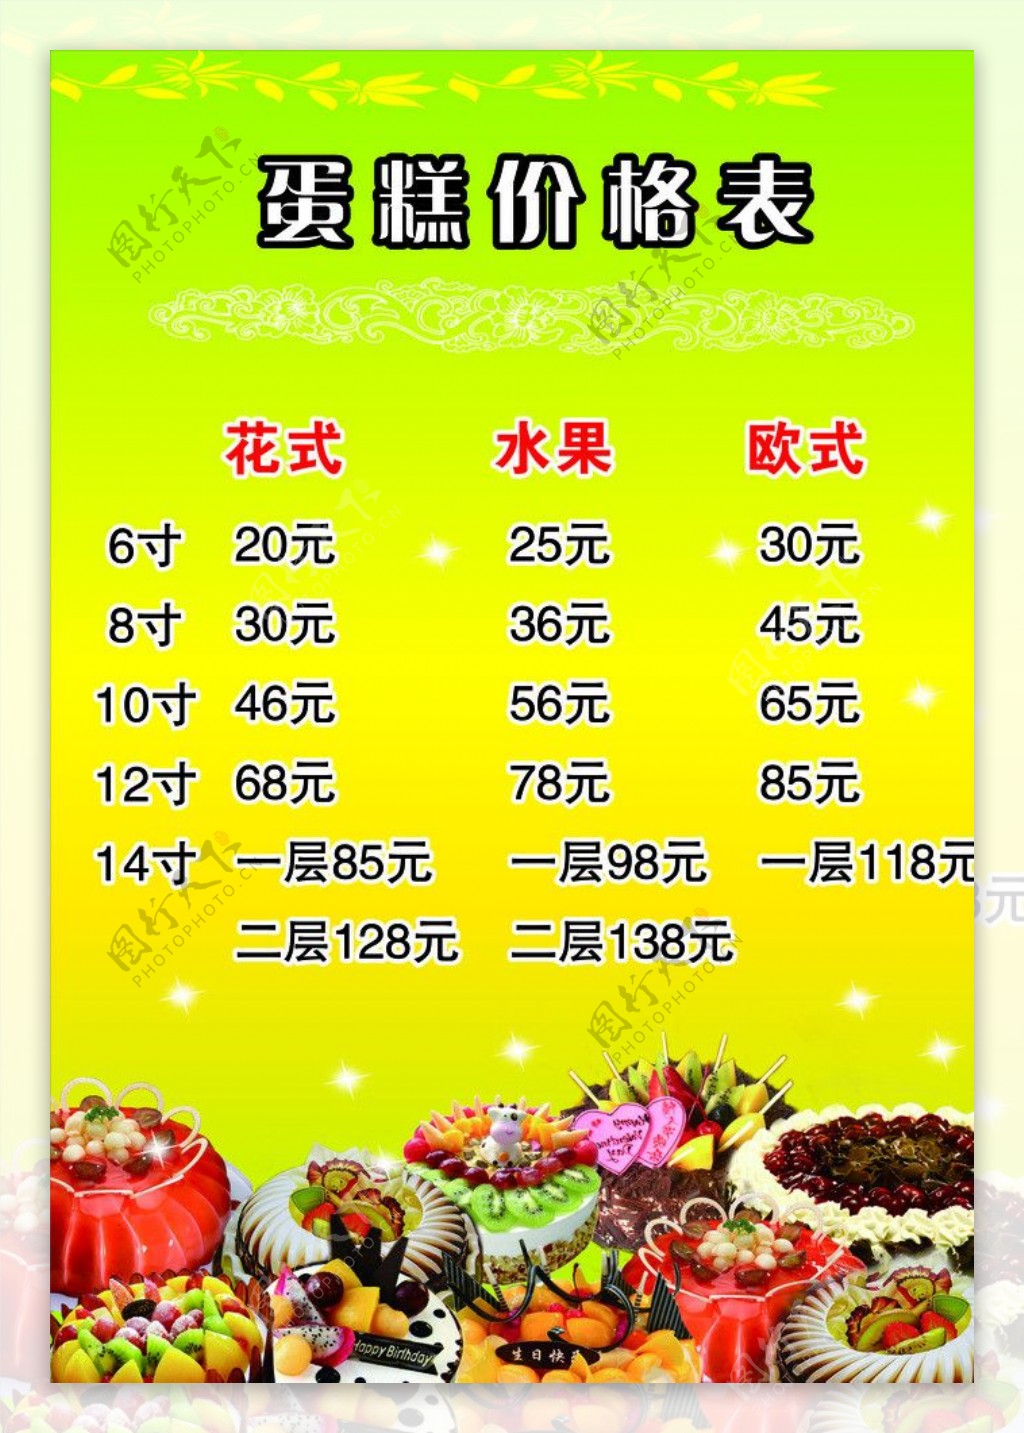 蛋糕价格表图片